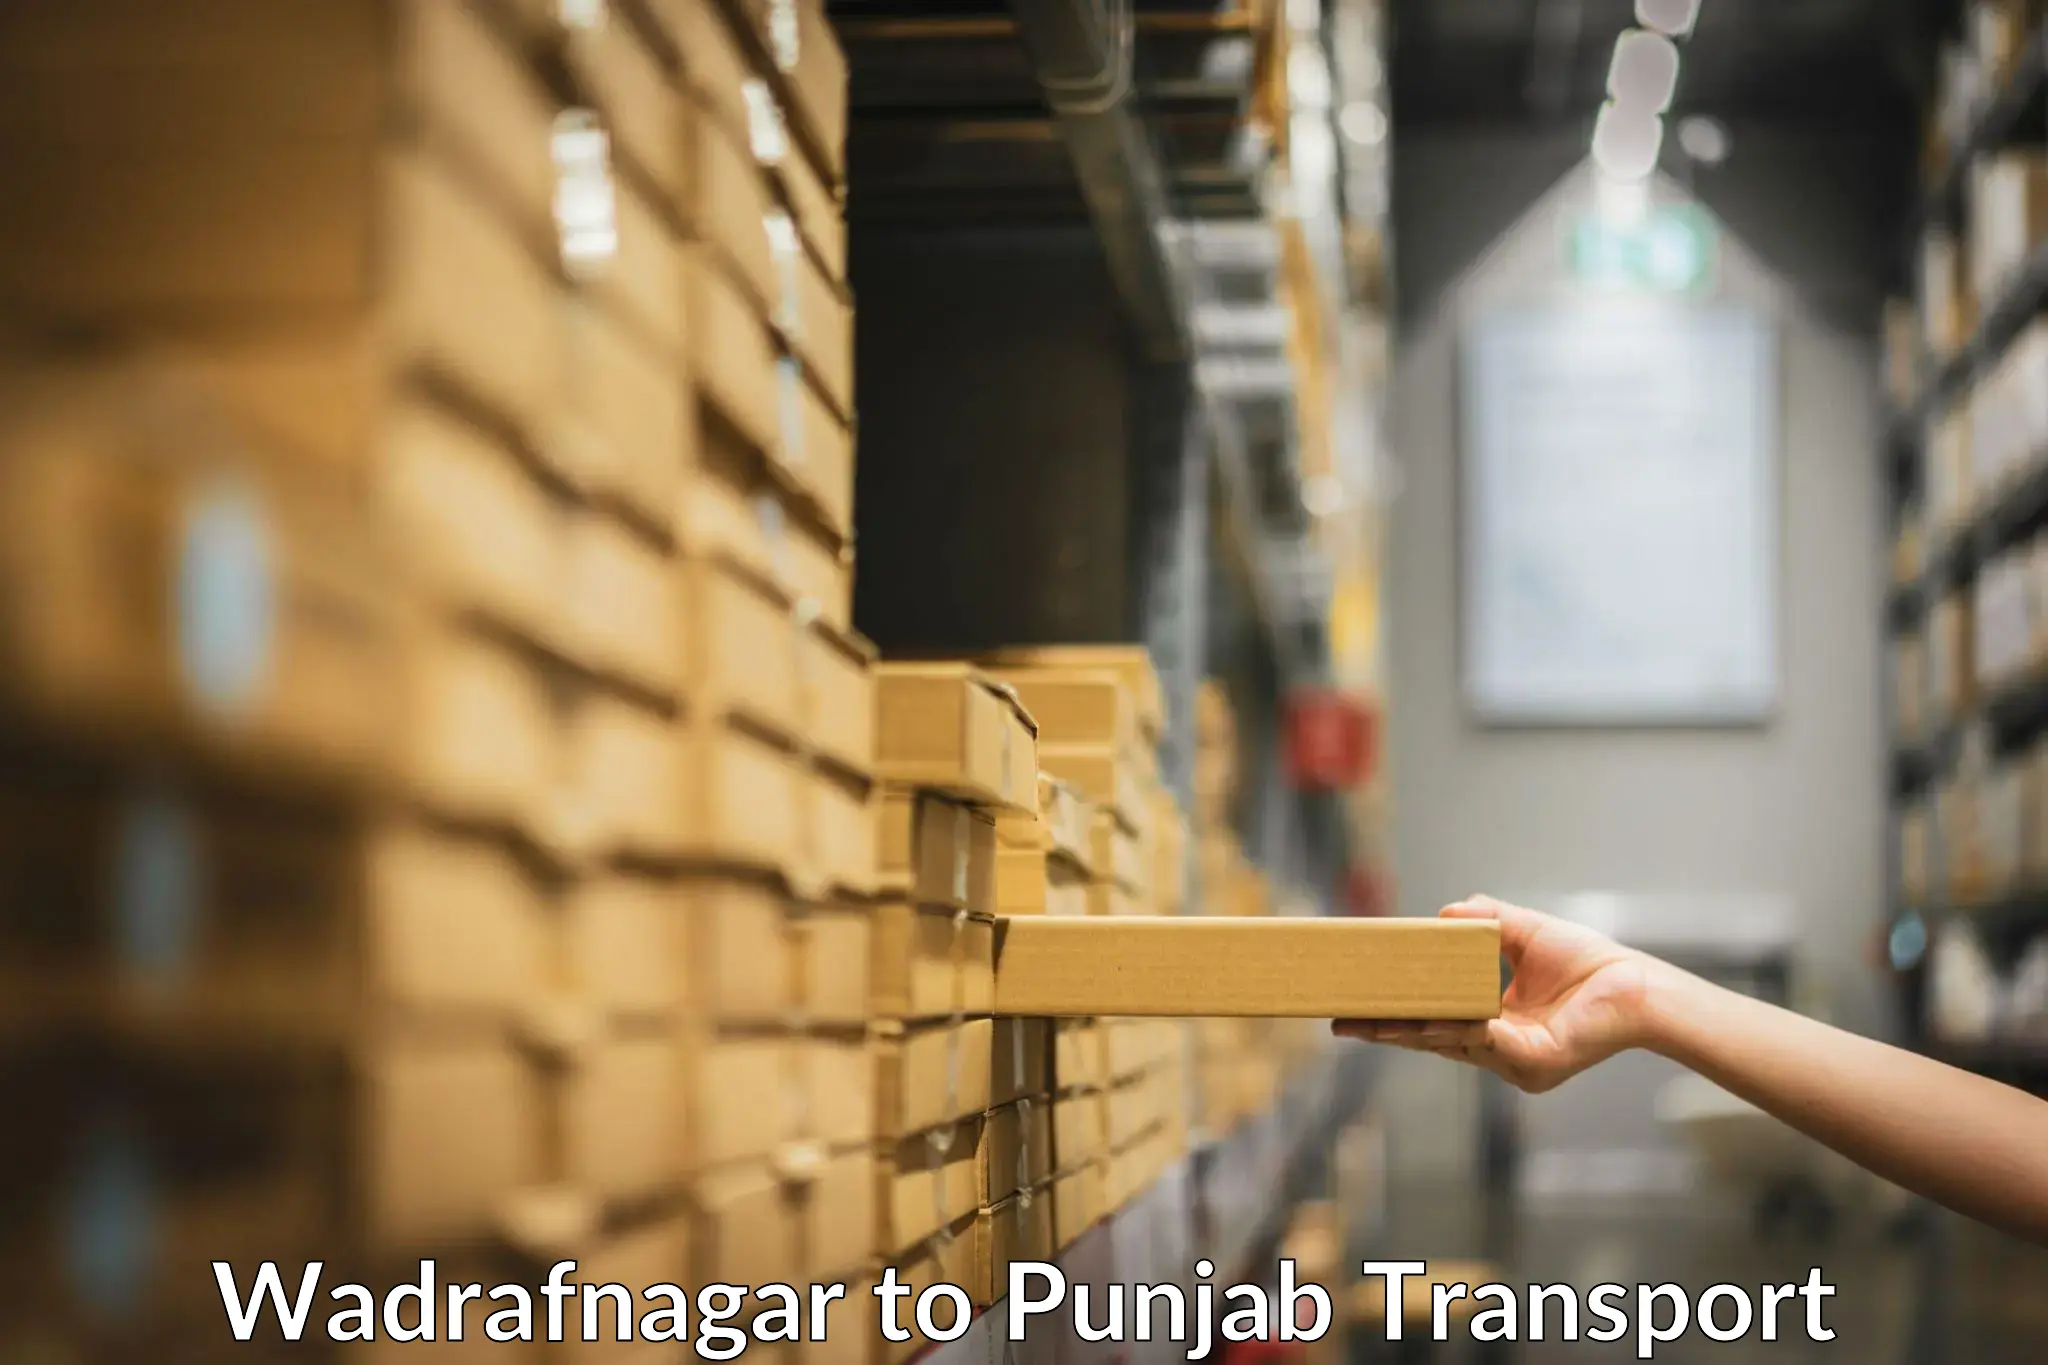 Shipping services Wadrafnagar to Sirhind Fatehgarh